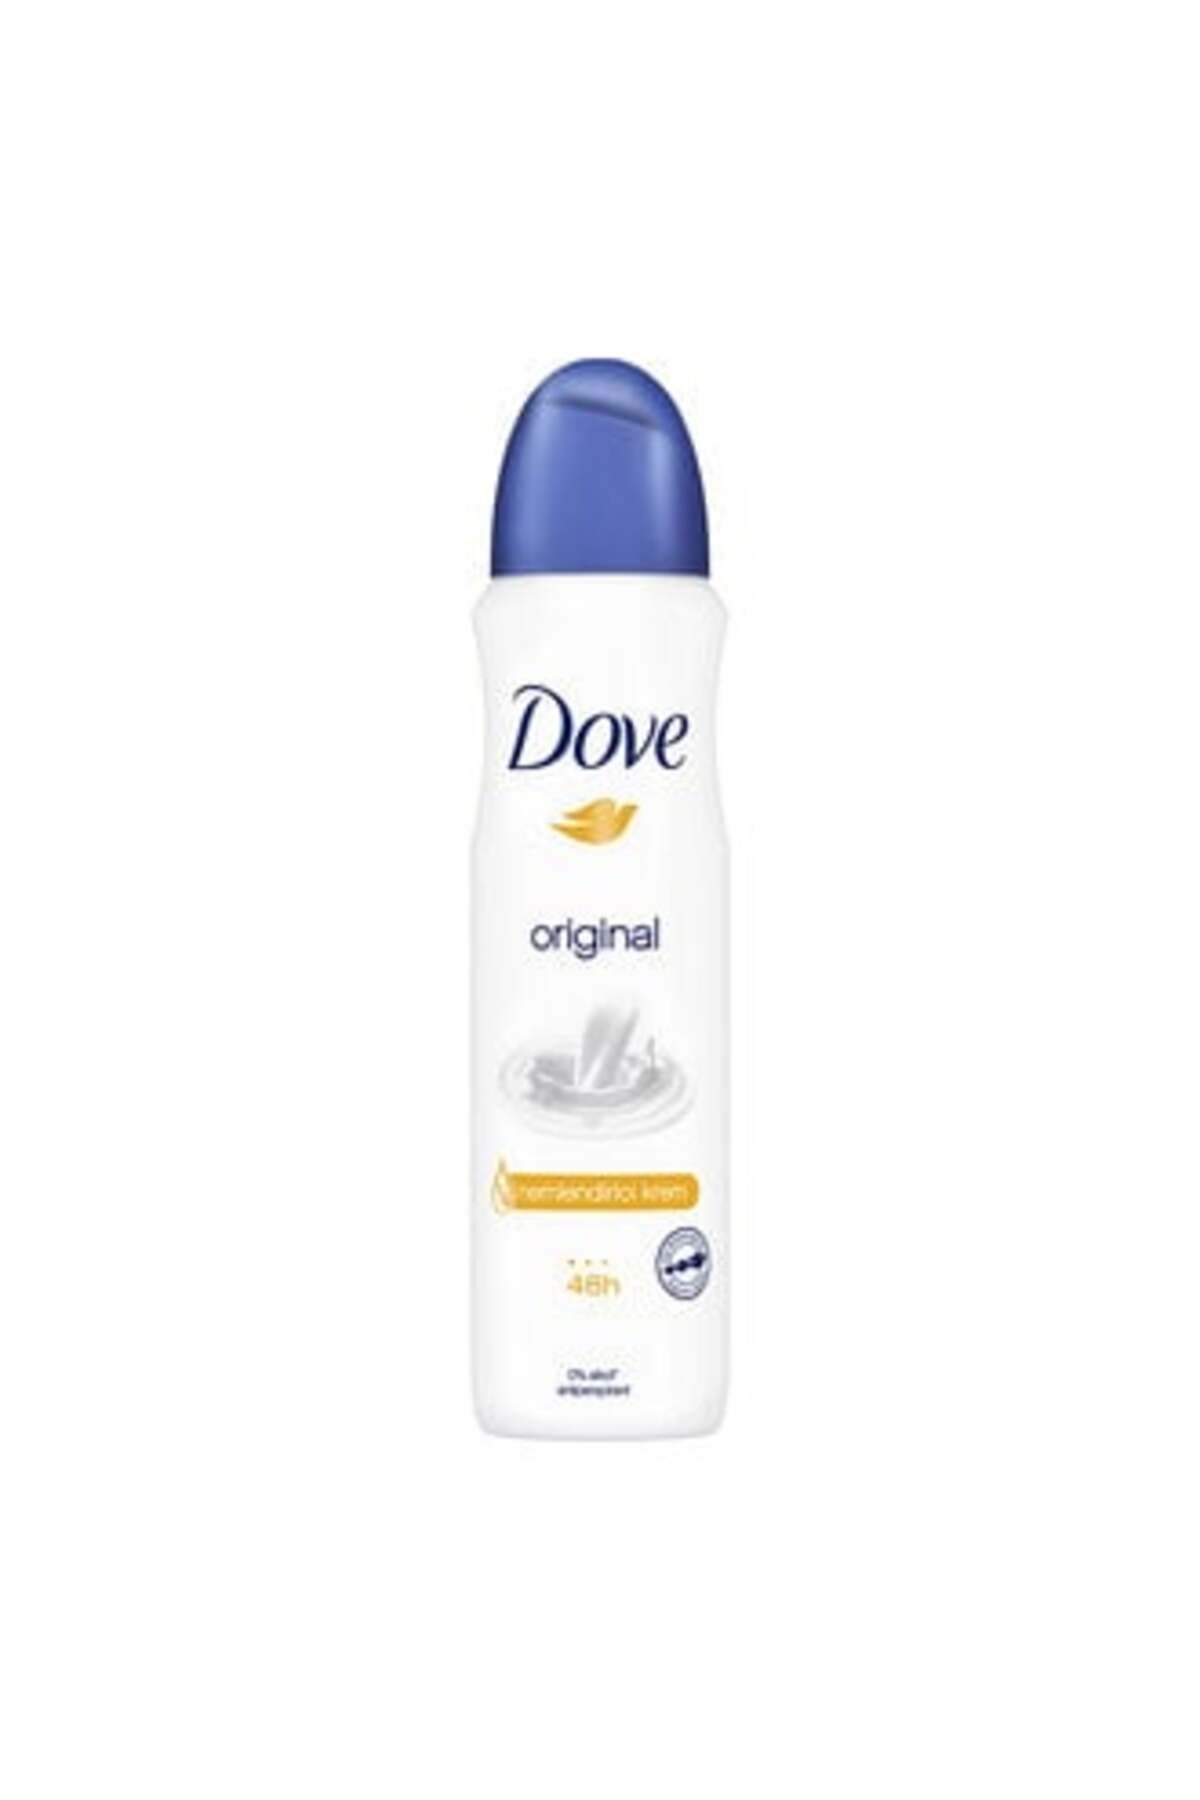 Dove Kadın Sprey Deodorant Original 150 ml ( 1 ADET )